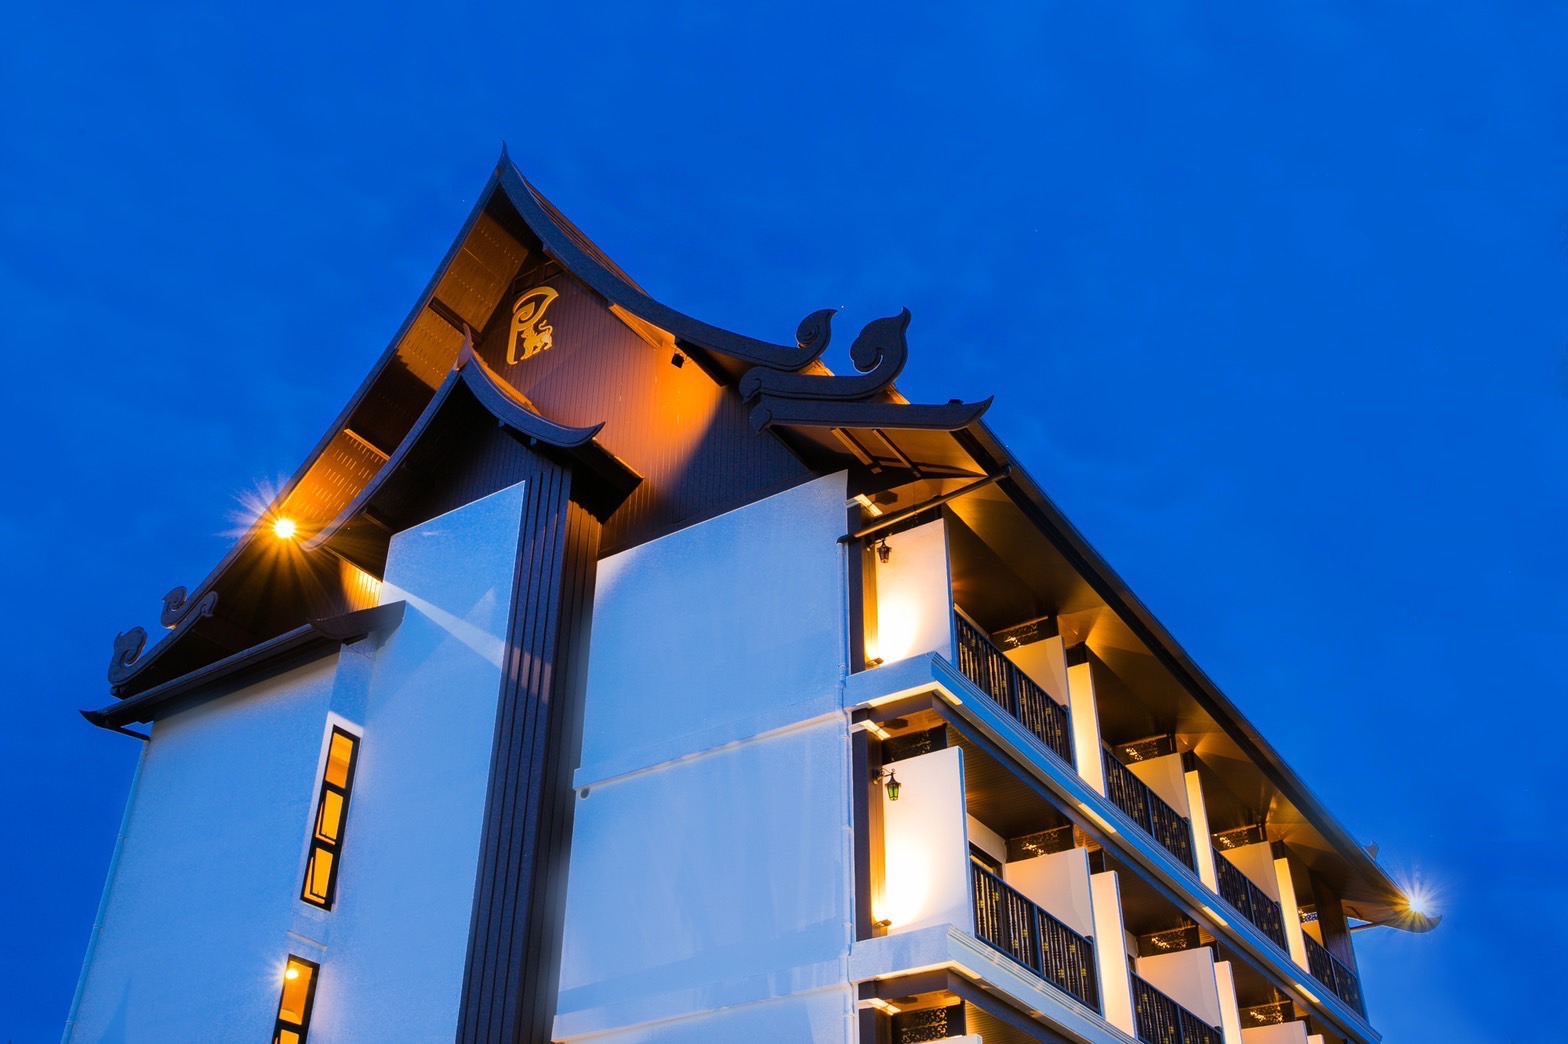 ขายกิจการโรงแรมบูติกโฮเทล ใจกลางเมืองเชียงใหม่ ราคา 65 ล้าน พร้อมใบอนุญาต